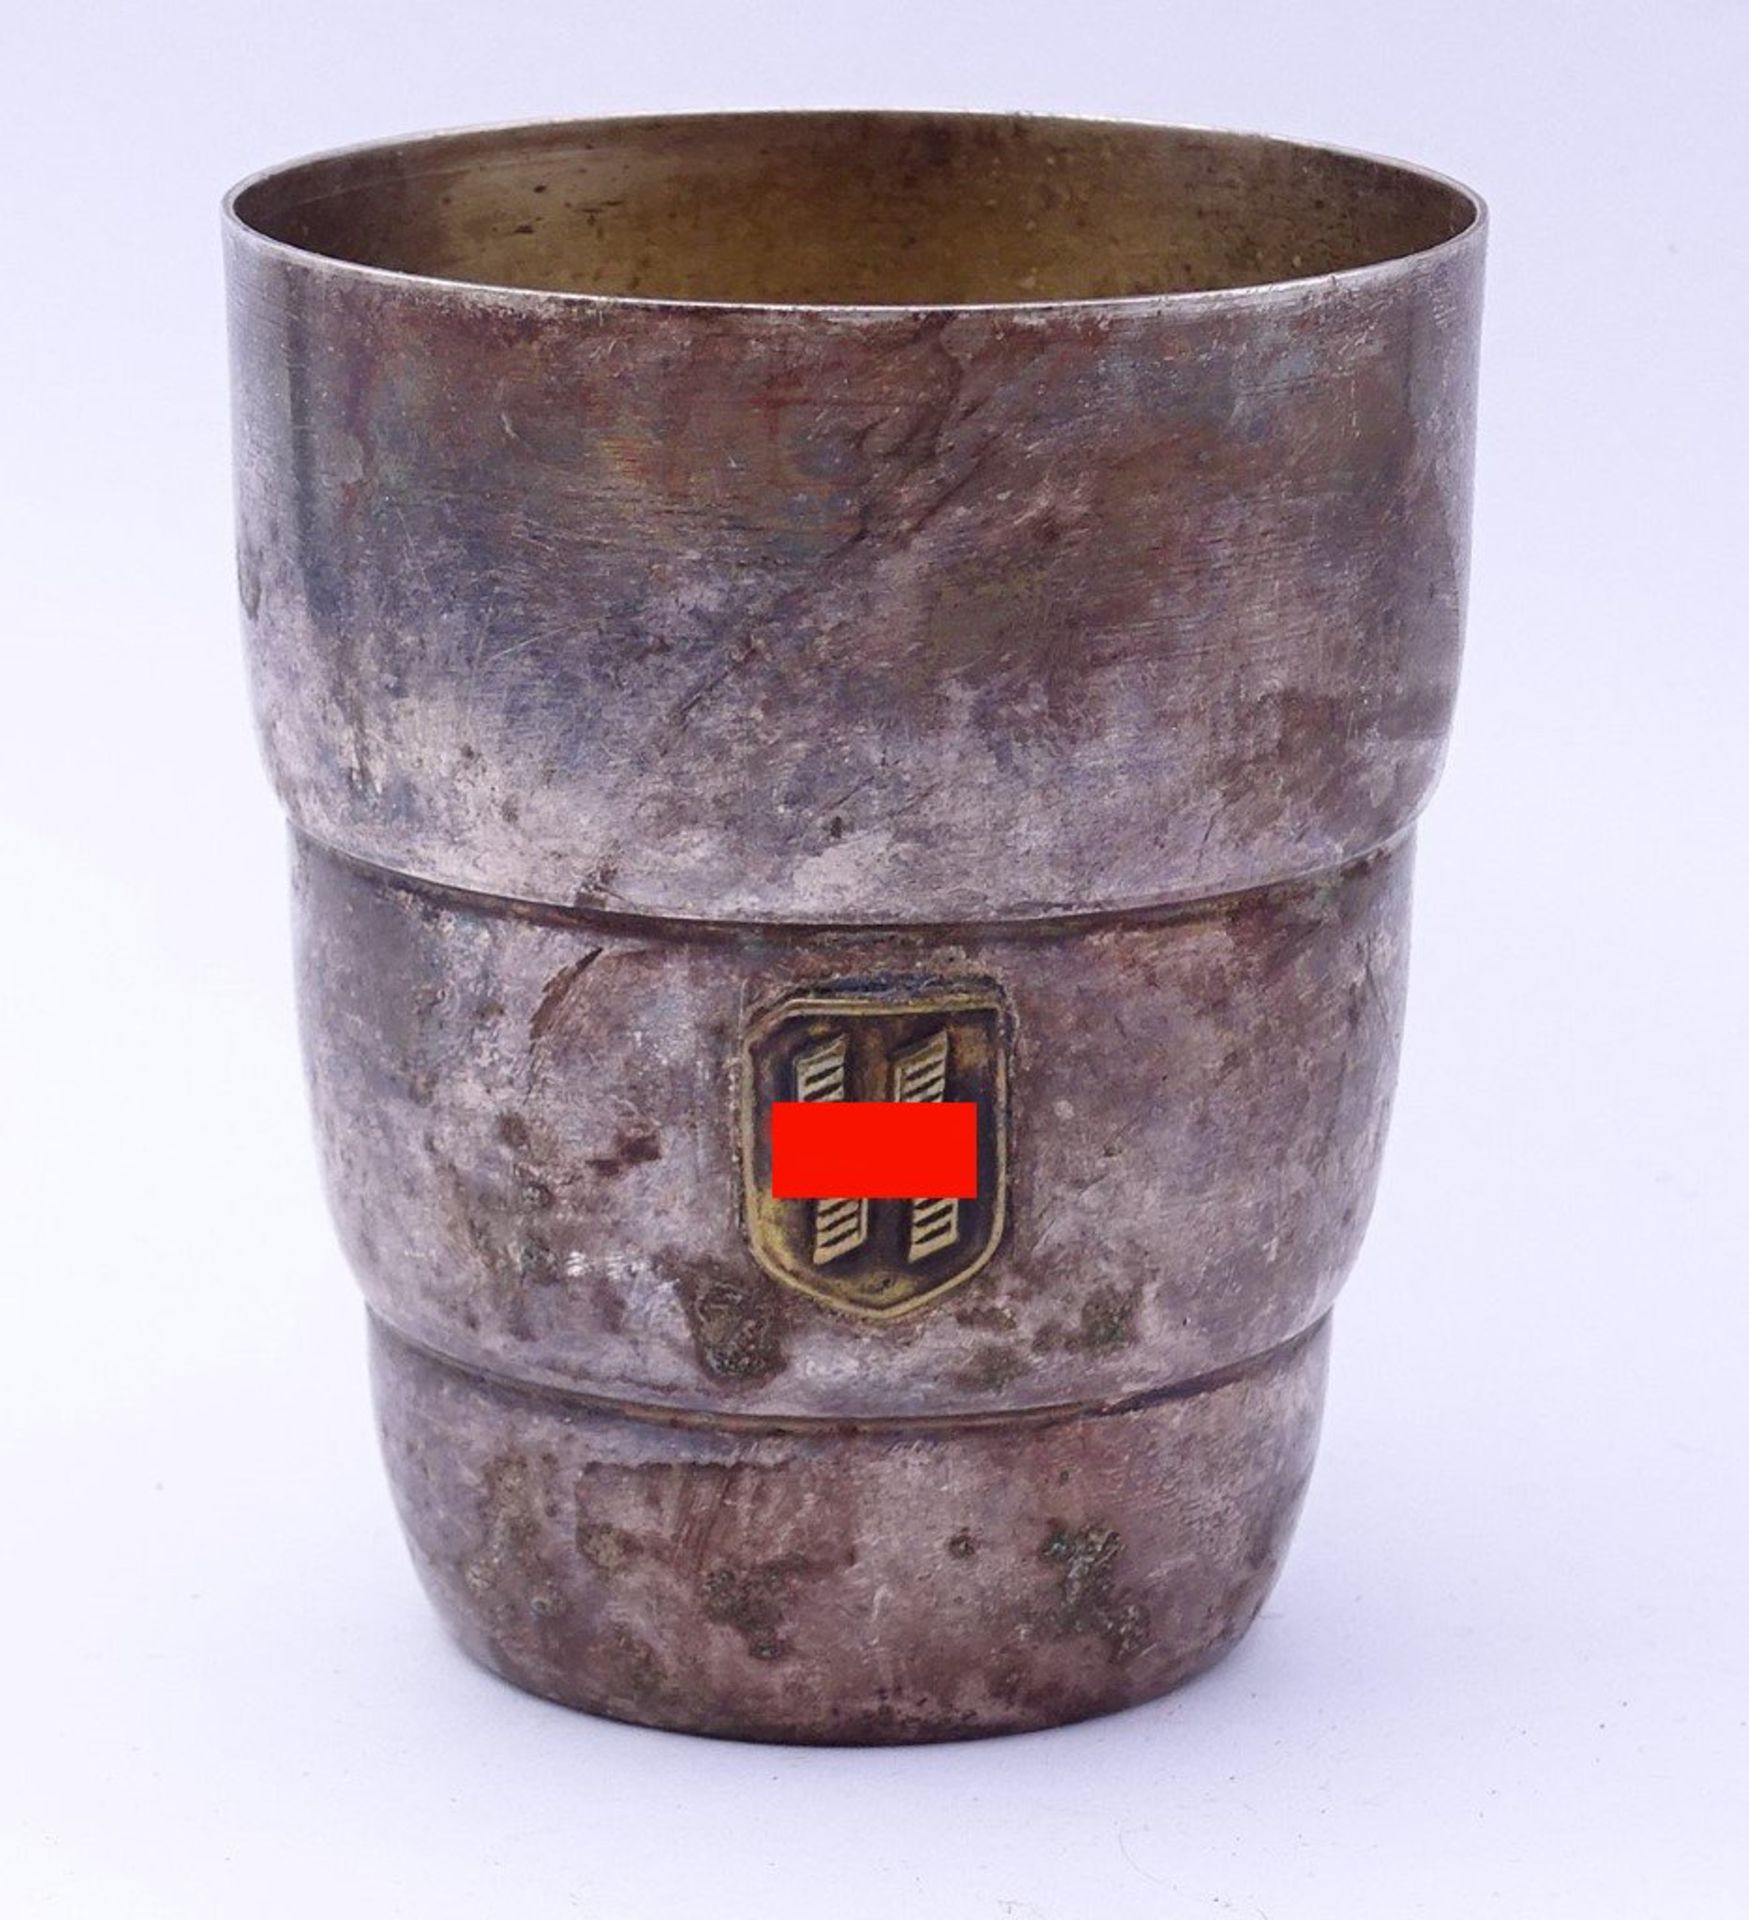 SS-Trinkbecher mit aufgelegter Rune,im Boden gepunzt,RZM,H-8,0cm,Alters-u. Gebrauchsspuren - Bild 2 aus 4